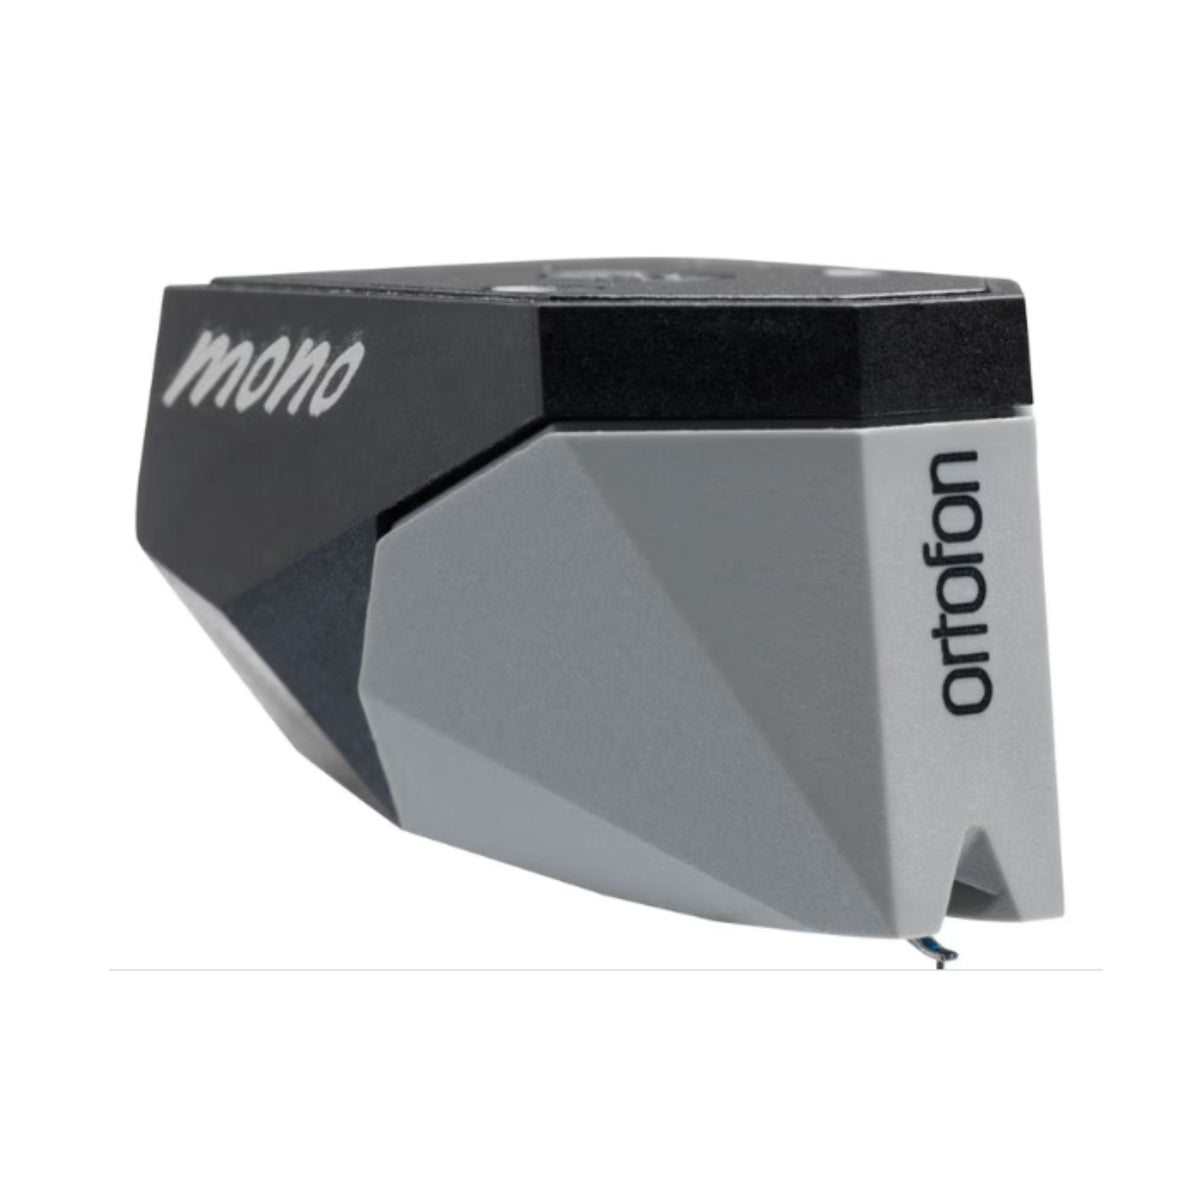 Ortofon 2M 78 - True Mono Moving Magnet Cartridge, Ortofon, Turntable Accessories - AVStore.in